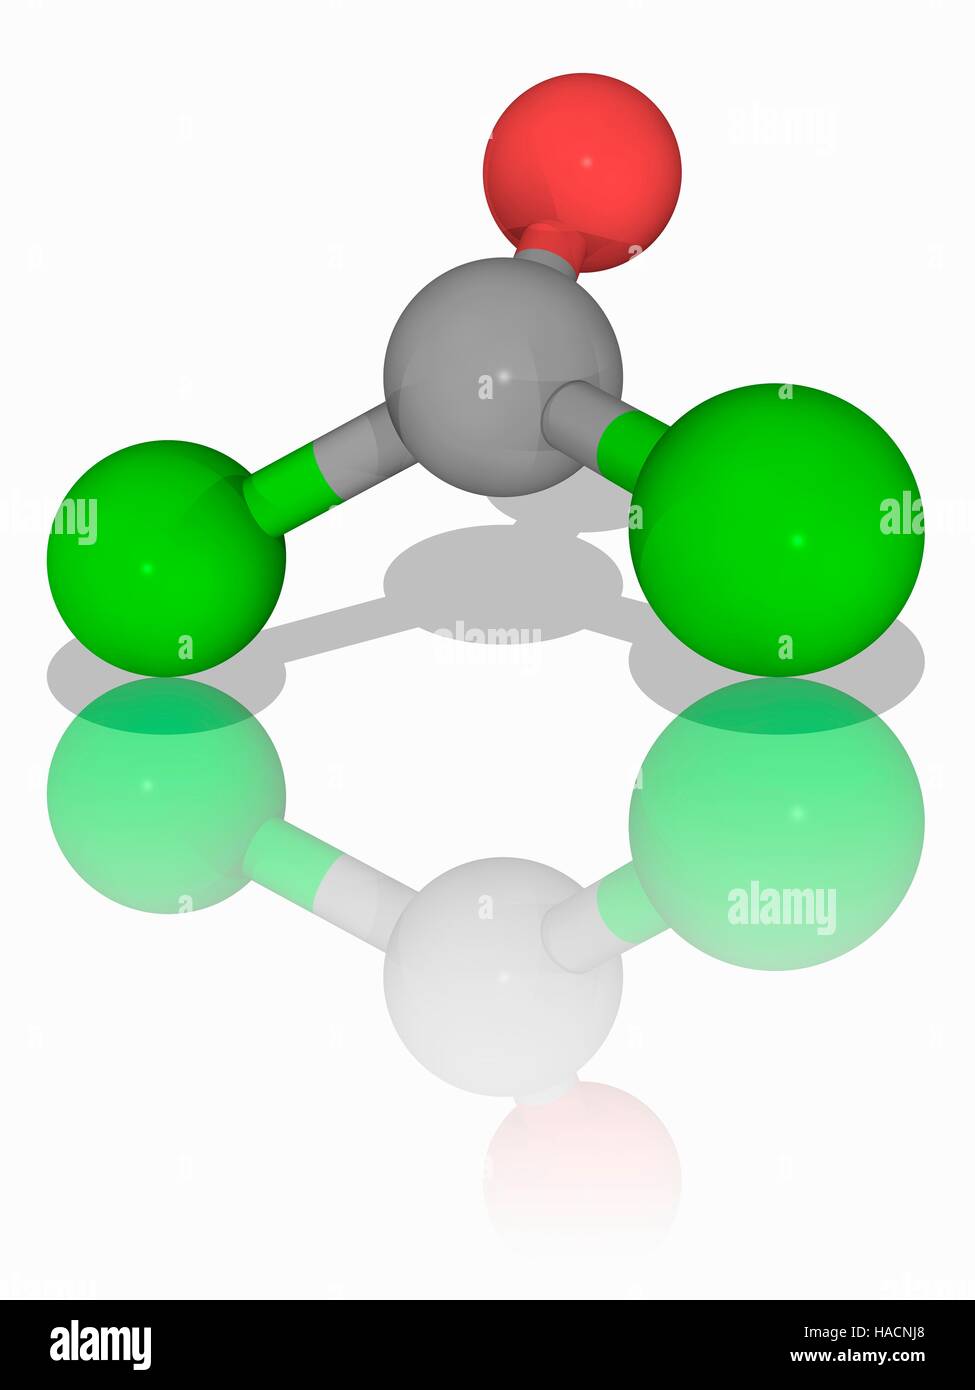 El fosgeno. Modelo molecular de los compuestos inorgánicos el fosgeno  (). Un gas incoloro, mató a decenas de miles de personas durante su  uso como arma química en la Primera Guerra Mundial.